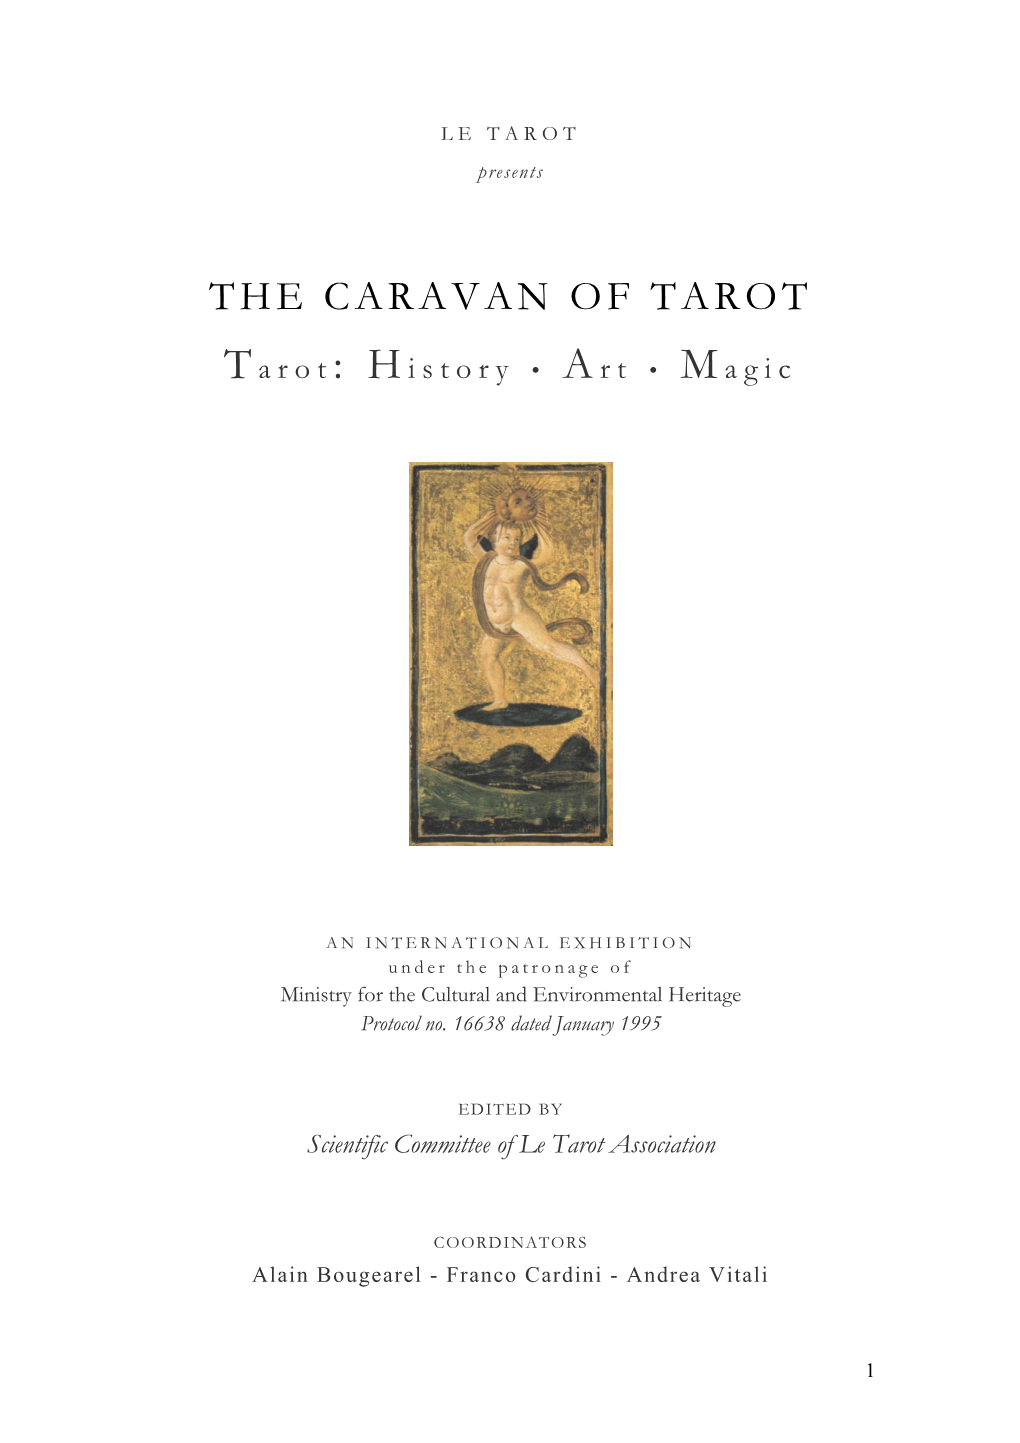 The Caravan of Tarot